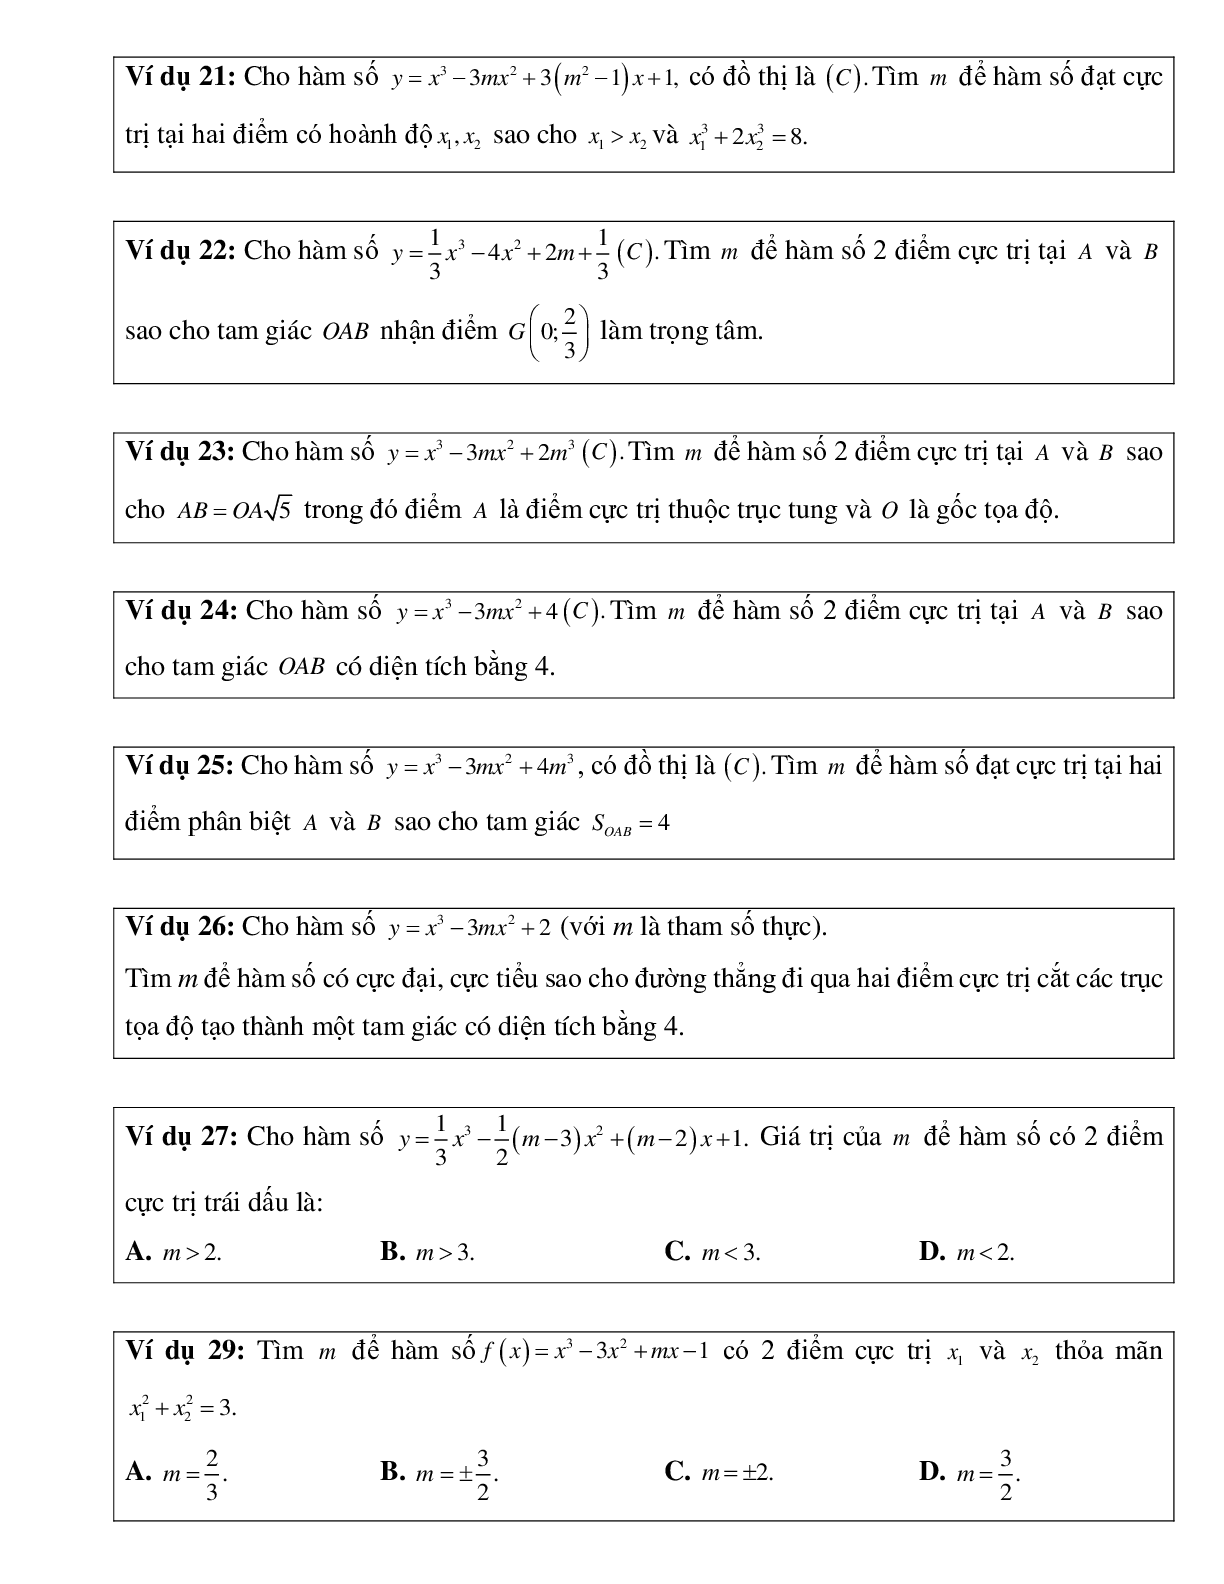 Tìm M để đồ thị hàm số đạt cực trị tại các điểm A,B thỏa mãn điều kiện cho trước (trang 4)